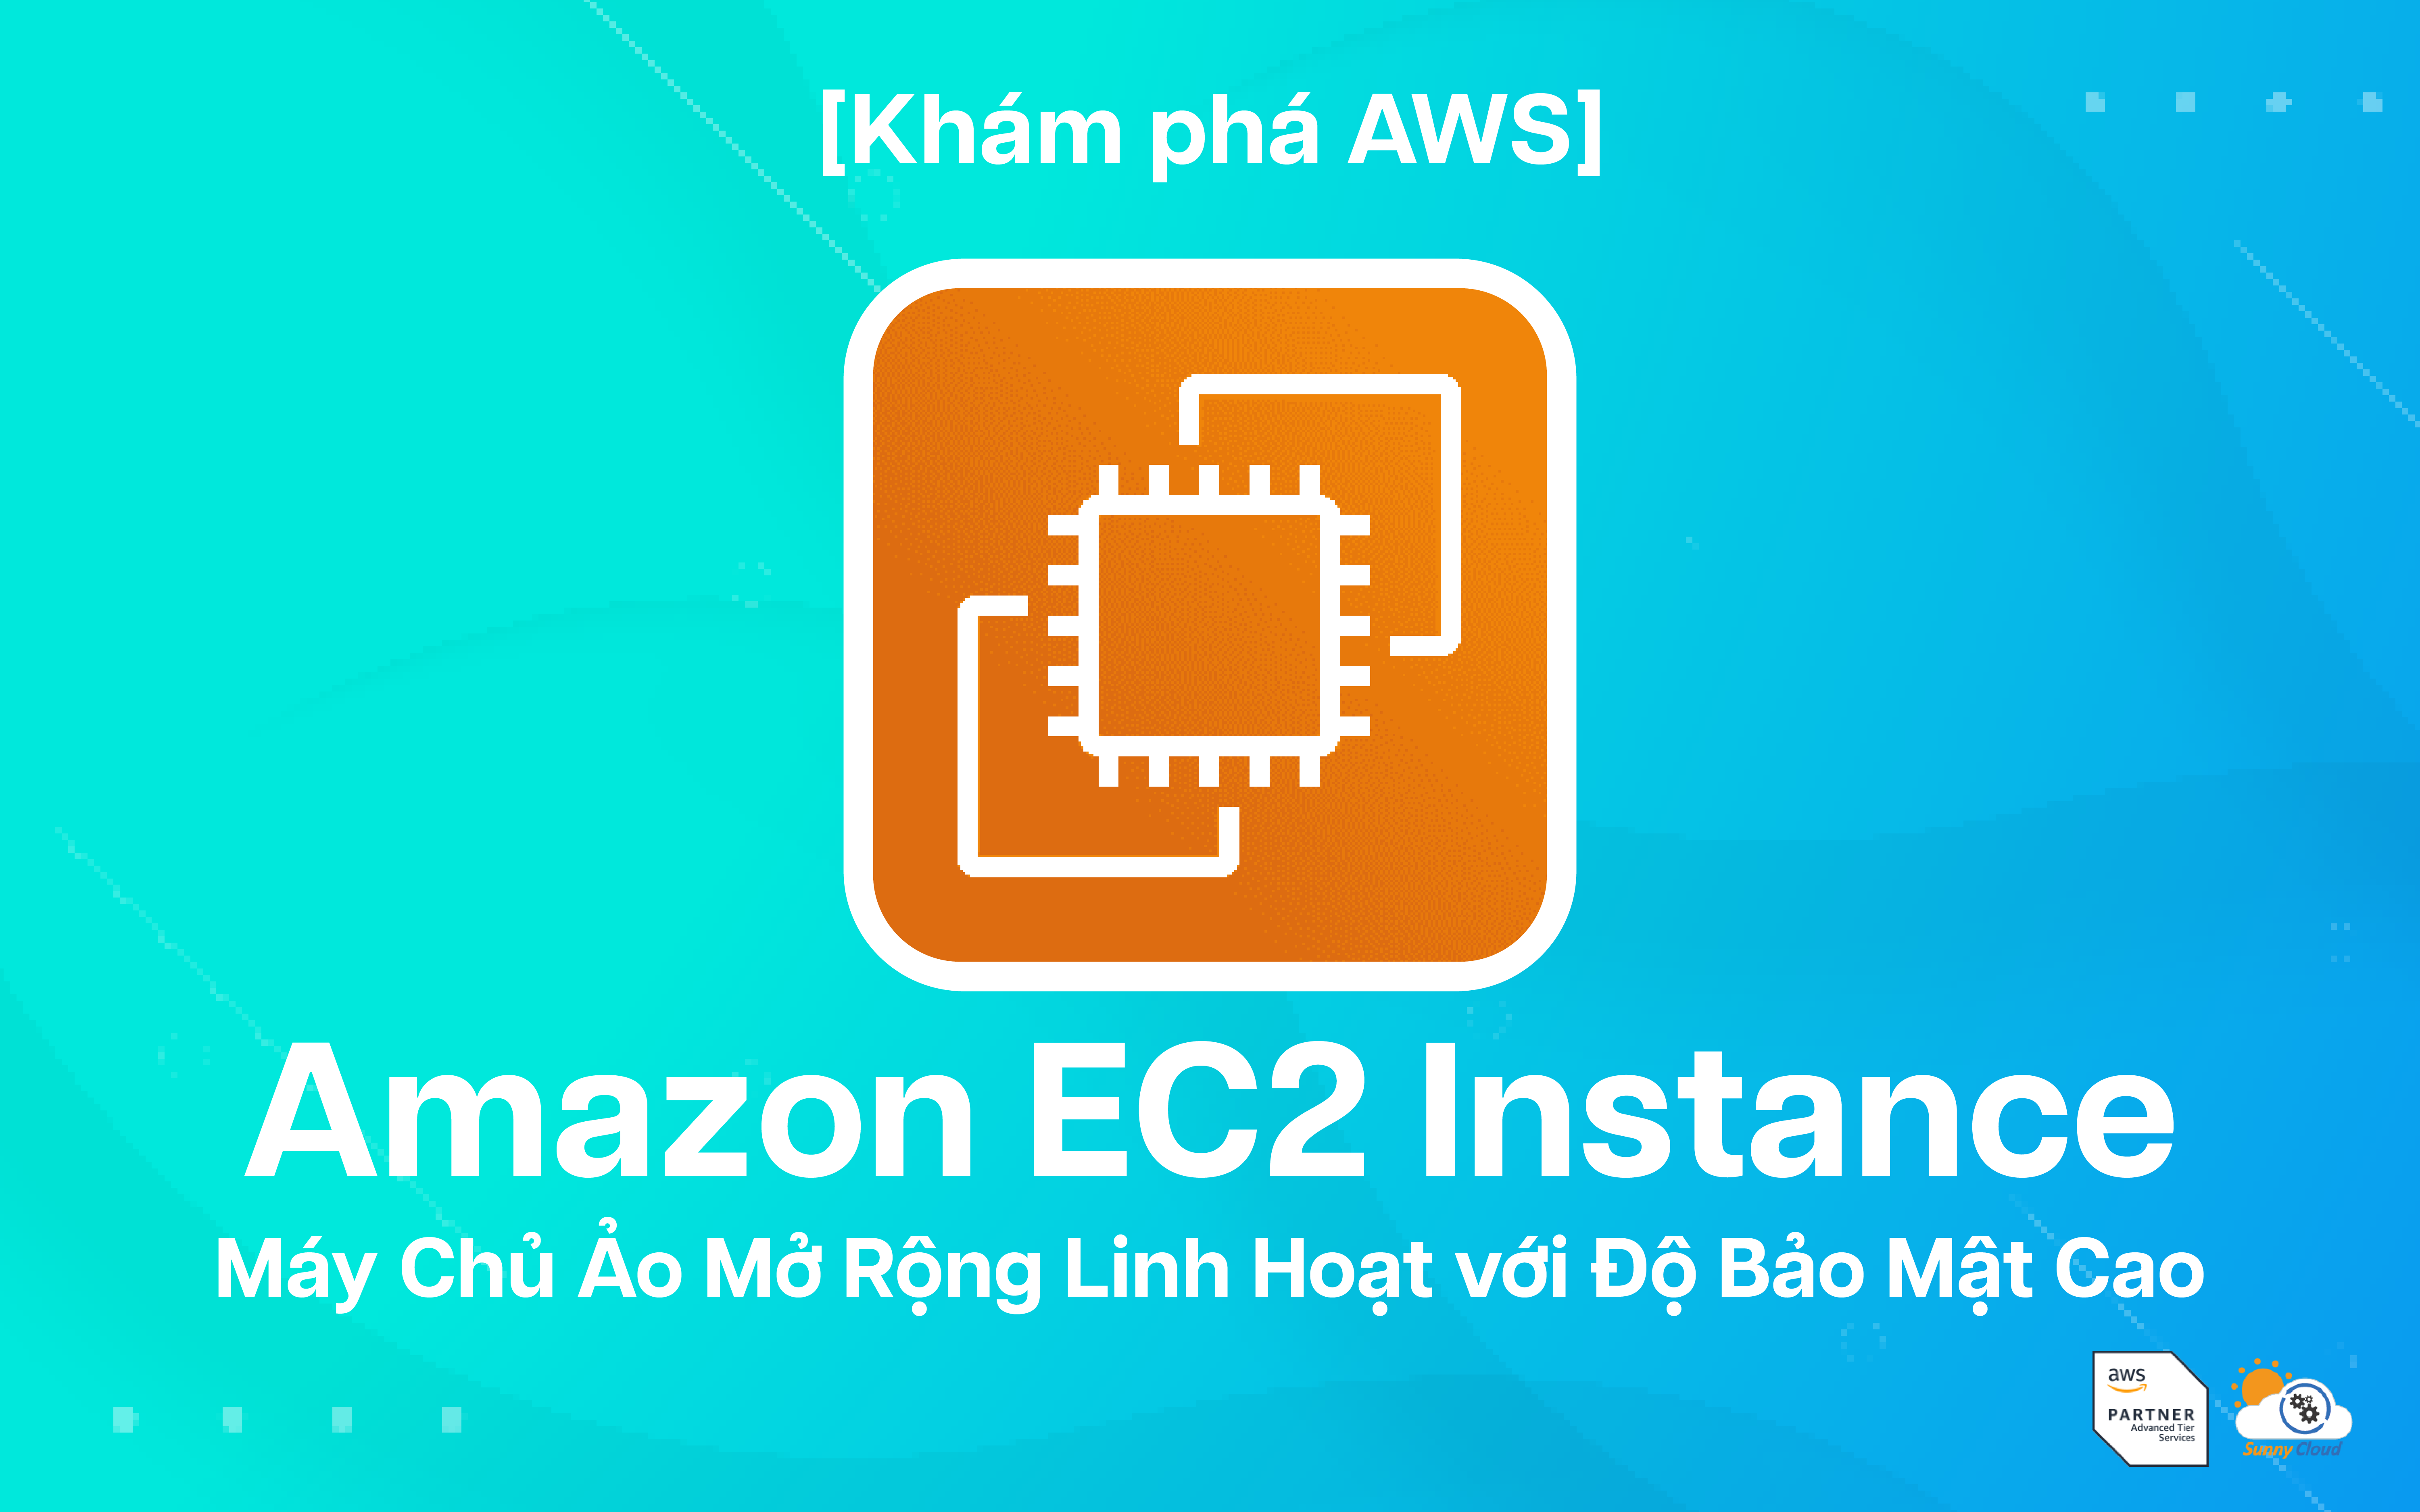 Amazon EC2 Instance – Máy Chủ Ảo Mở Rộng Linh Hoạt với Độ Bảo Mật Cao